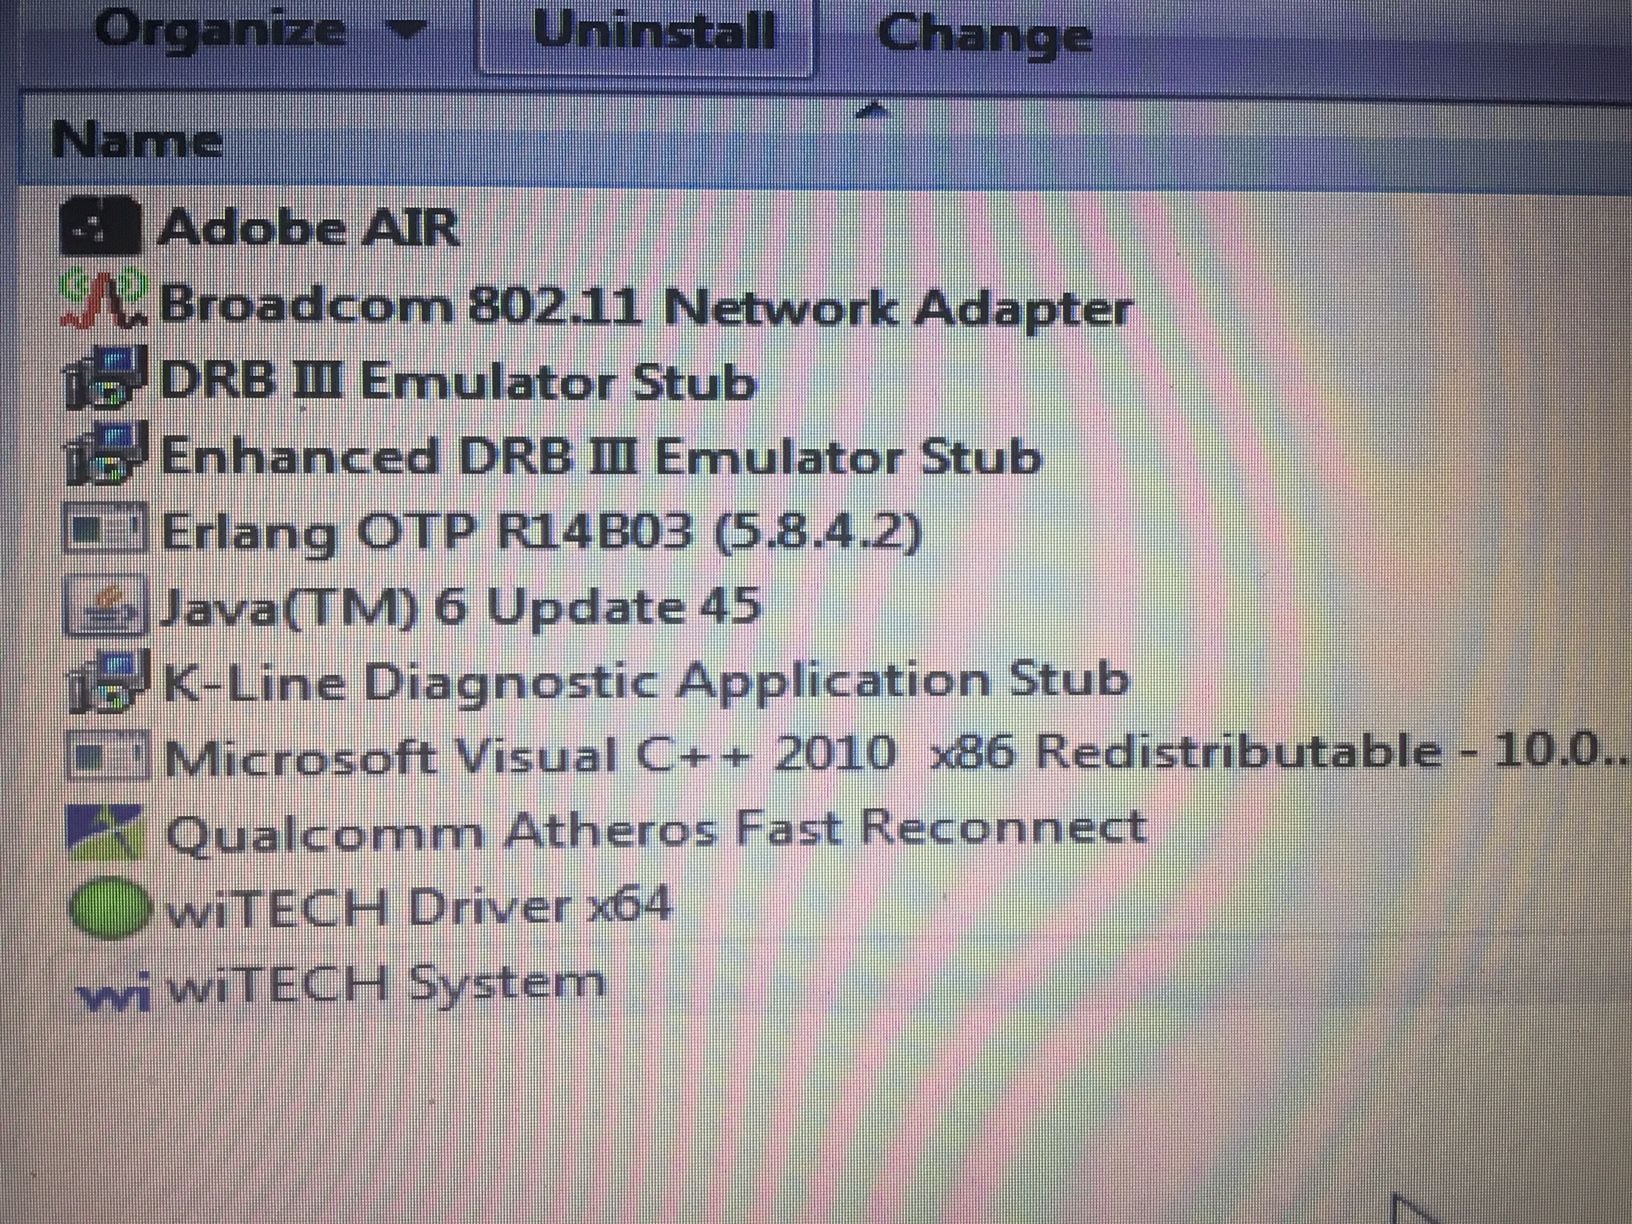 drb3 emulator software